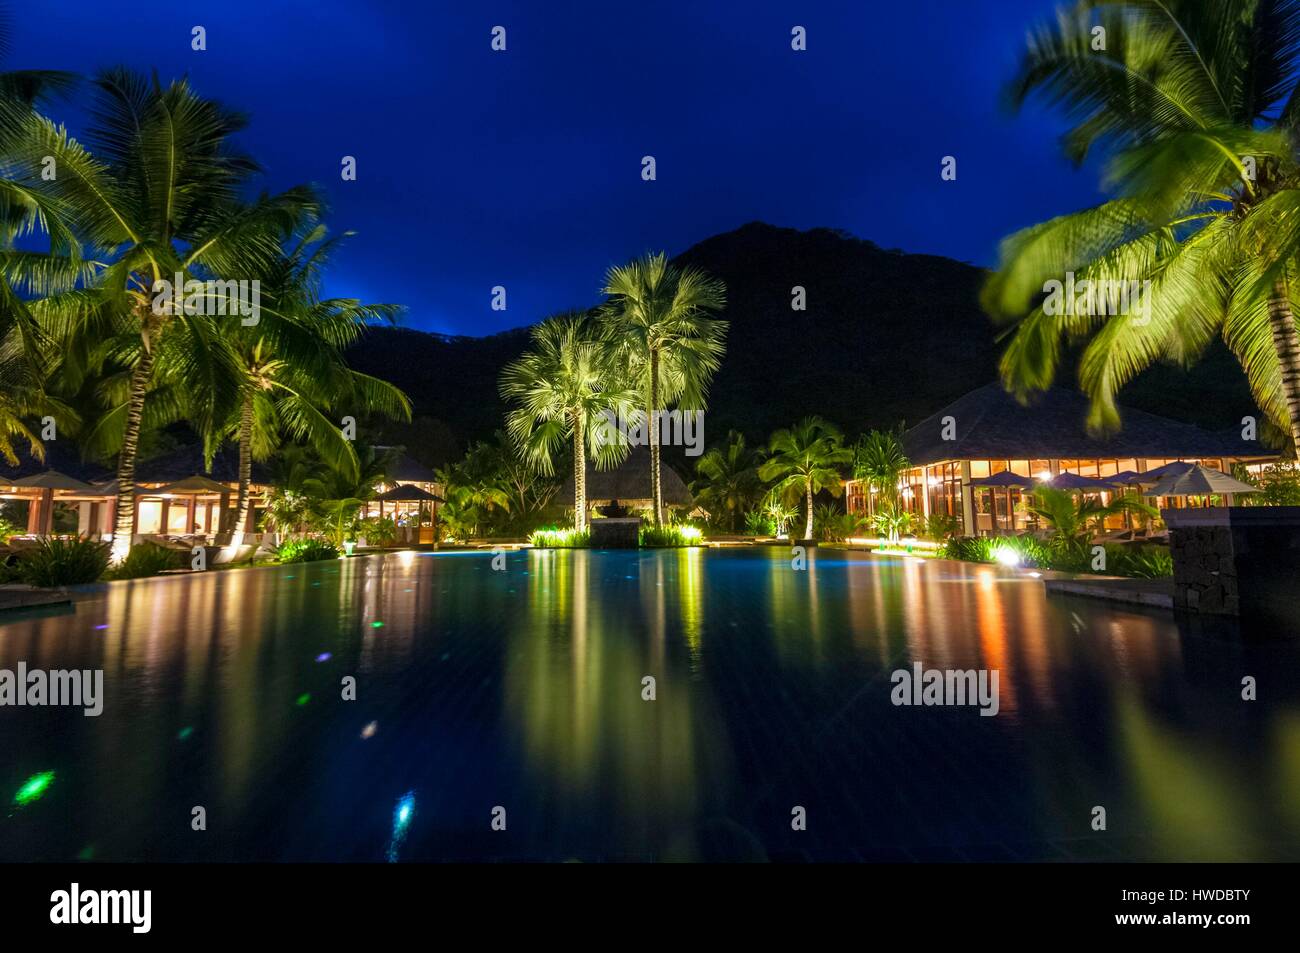 Khu nghỉ dưỡng Hilton Seychelles Labriz nằm trên đảo Silhouette với cảnh quan thiên nhiên tuyệt đẹp và các tiện nghi cao cấp. Khách sạn được thiết kế độc đáo và hiện đại, tạo ra không gian nghỉ ngơi thoải mái và ấn tượng. Nơi đây là lựa chọn hoàn hảo cho những ai muốn trốn khỏi nhịp sống đô thị và thư giãn tại một trong những điểm đẹp nhất của thế giới. 